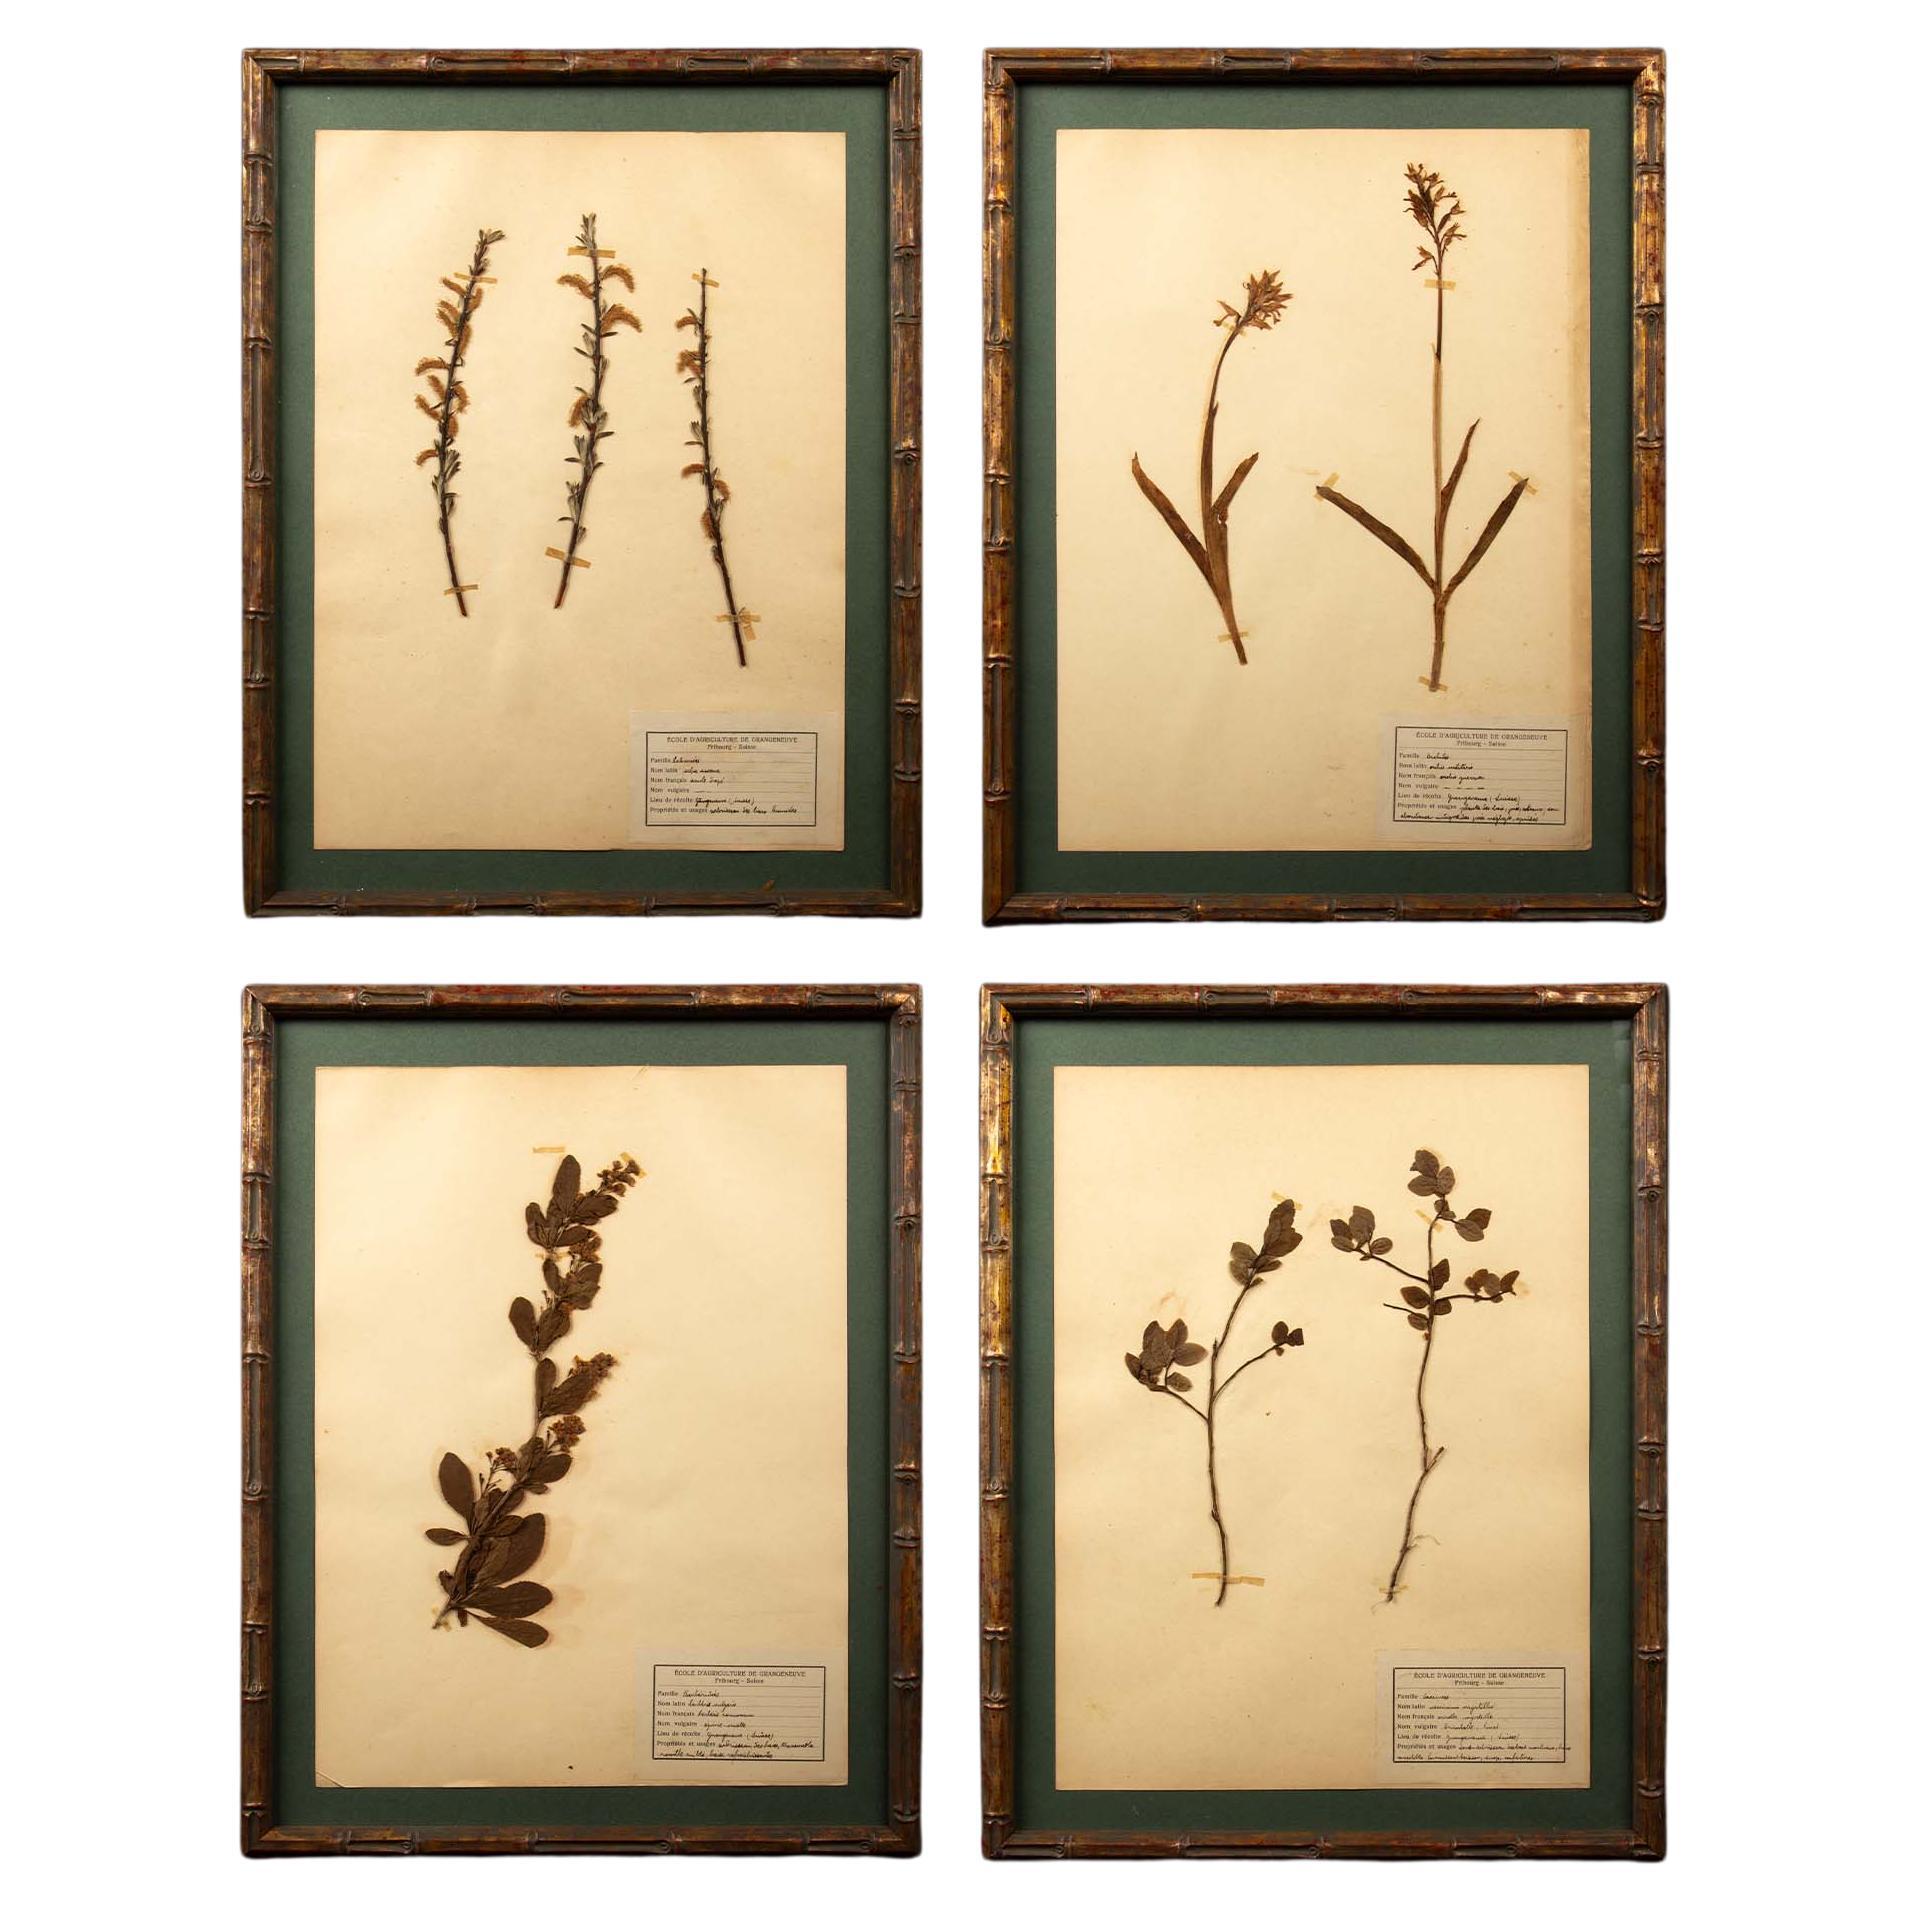 Spécimens botaniques d'Herbier encadrés et dorés du 19ème siècle